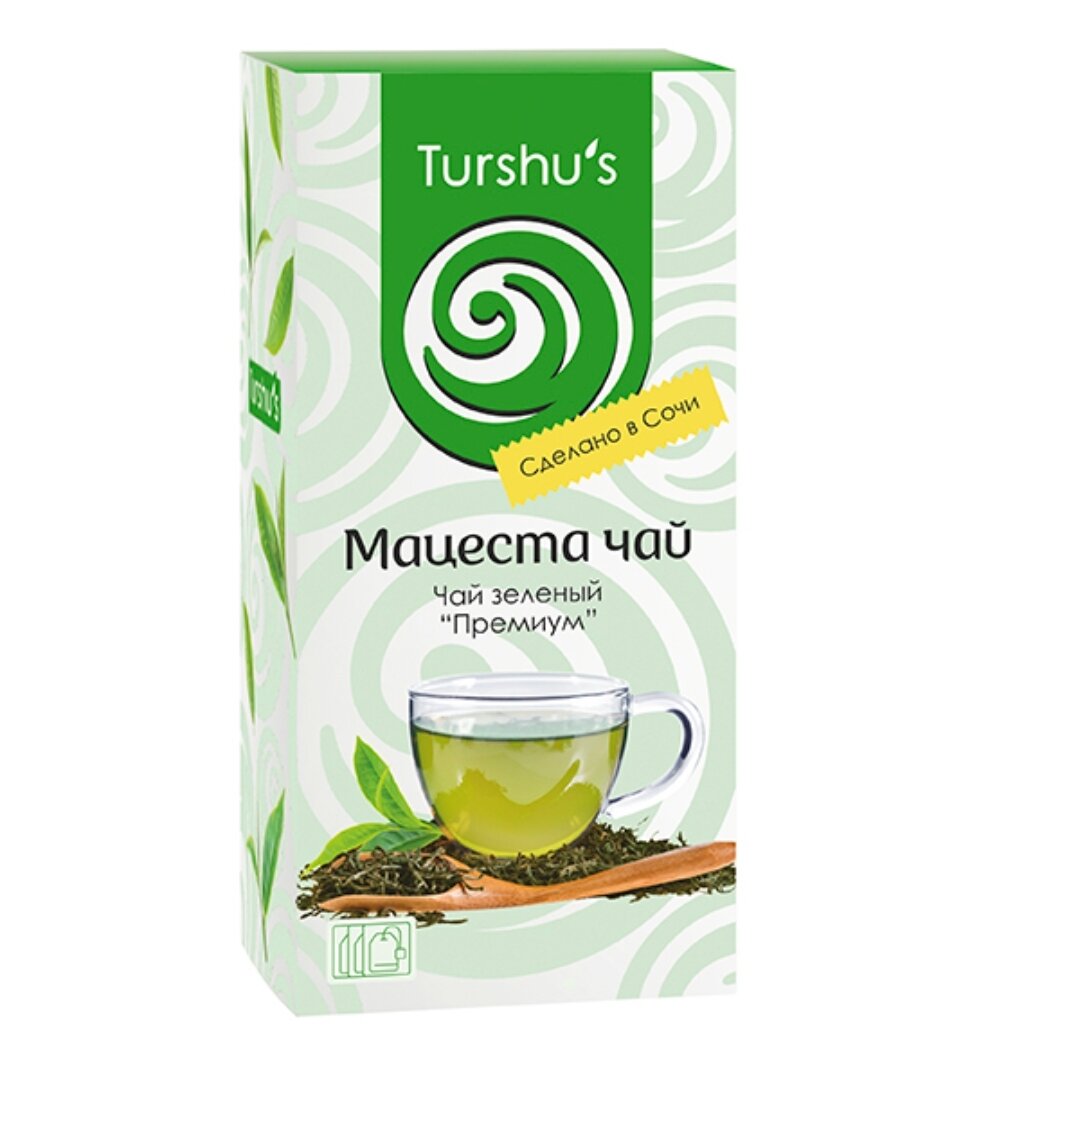 Чай зеленый классический "Премиум" 25 пакетиков по 1,5г. в индивидуальном конверте